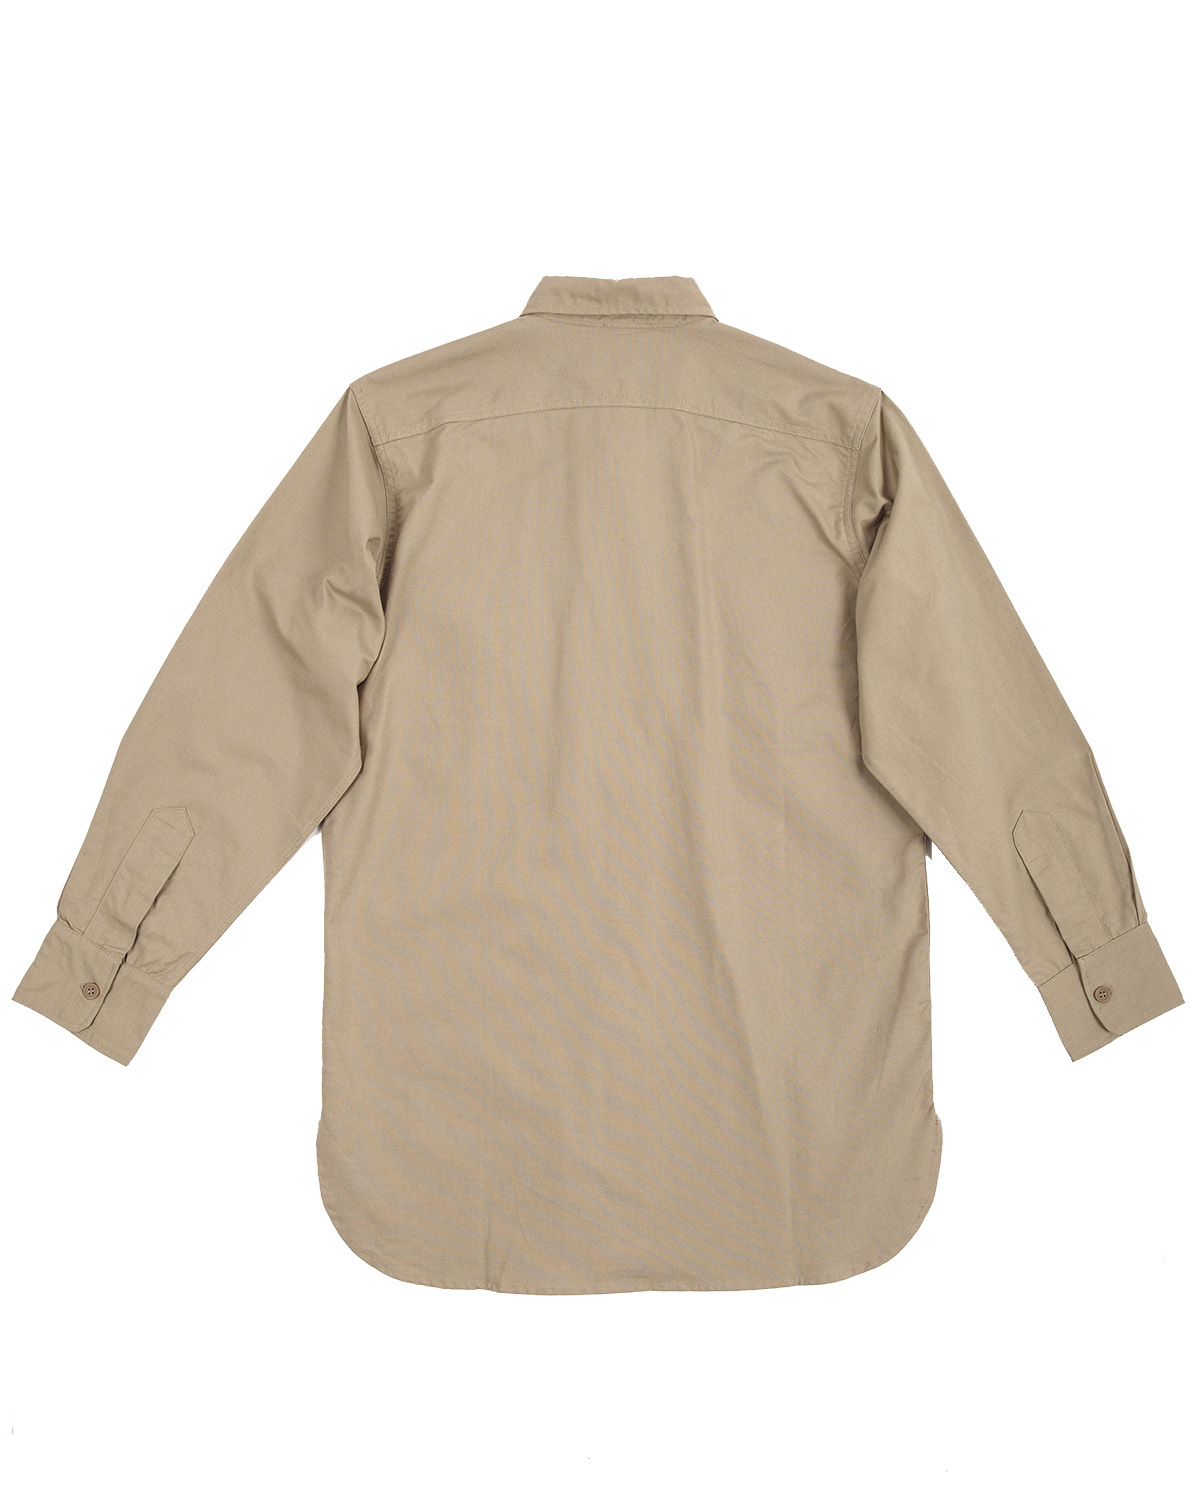 Marine Corps Khaki Shirt